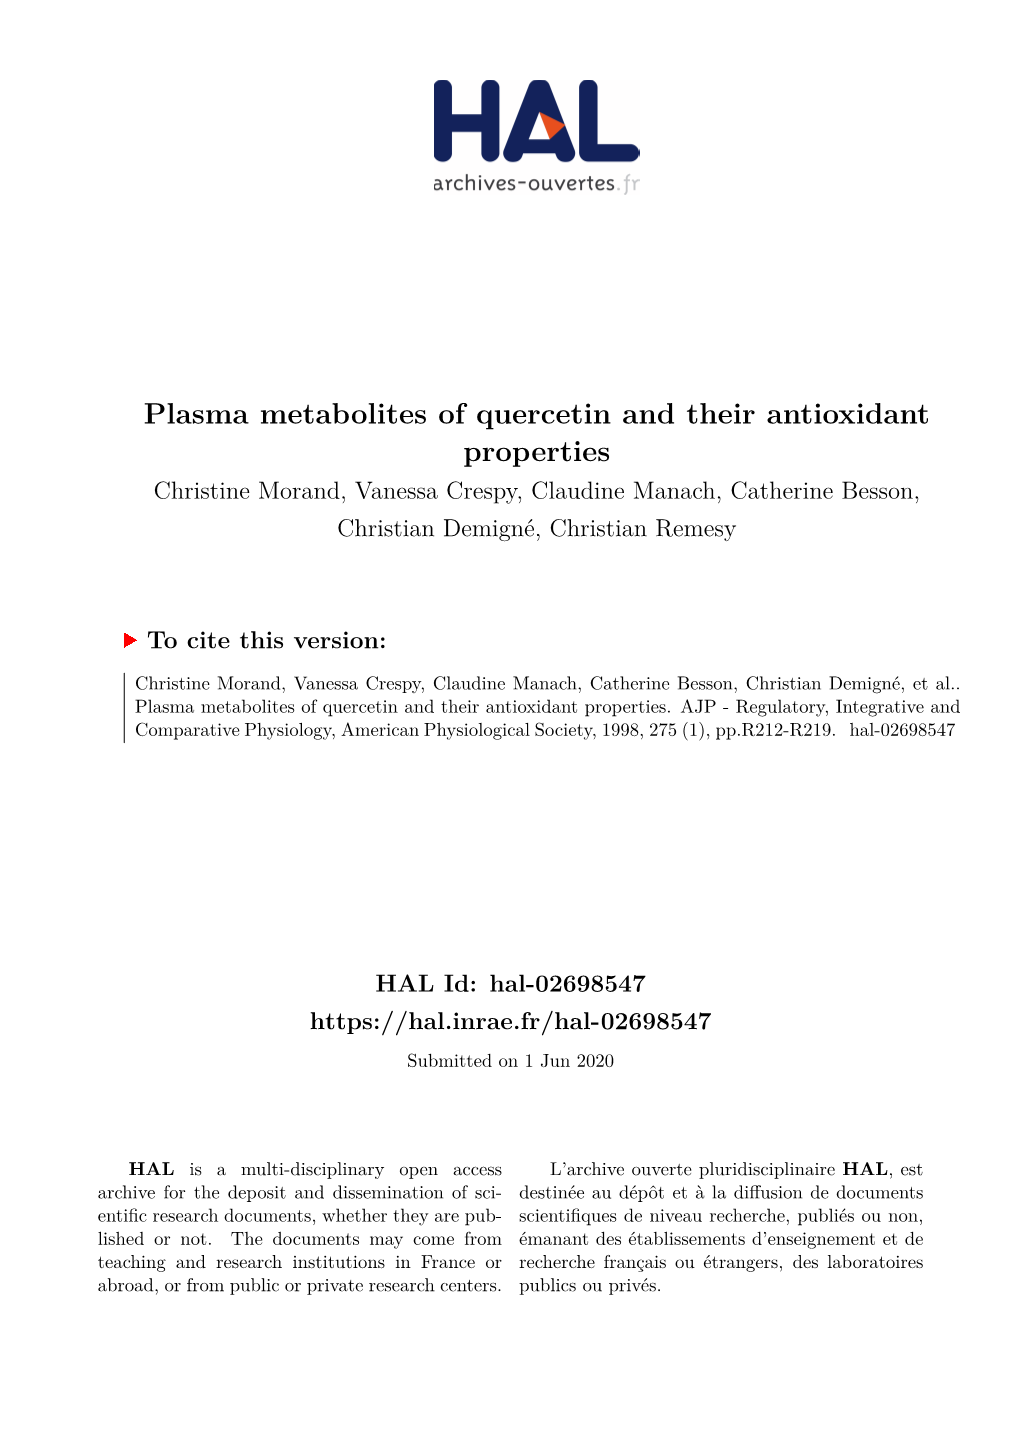 Plasma Metabolites of Quercetin and Their Antioxidant